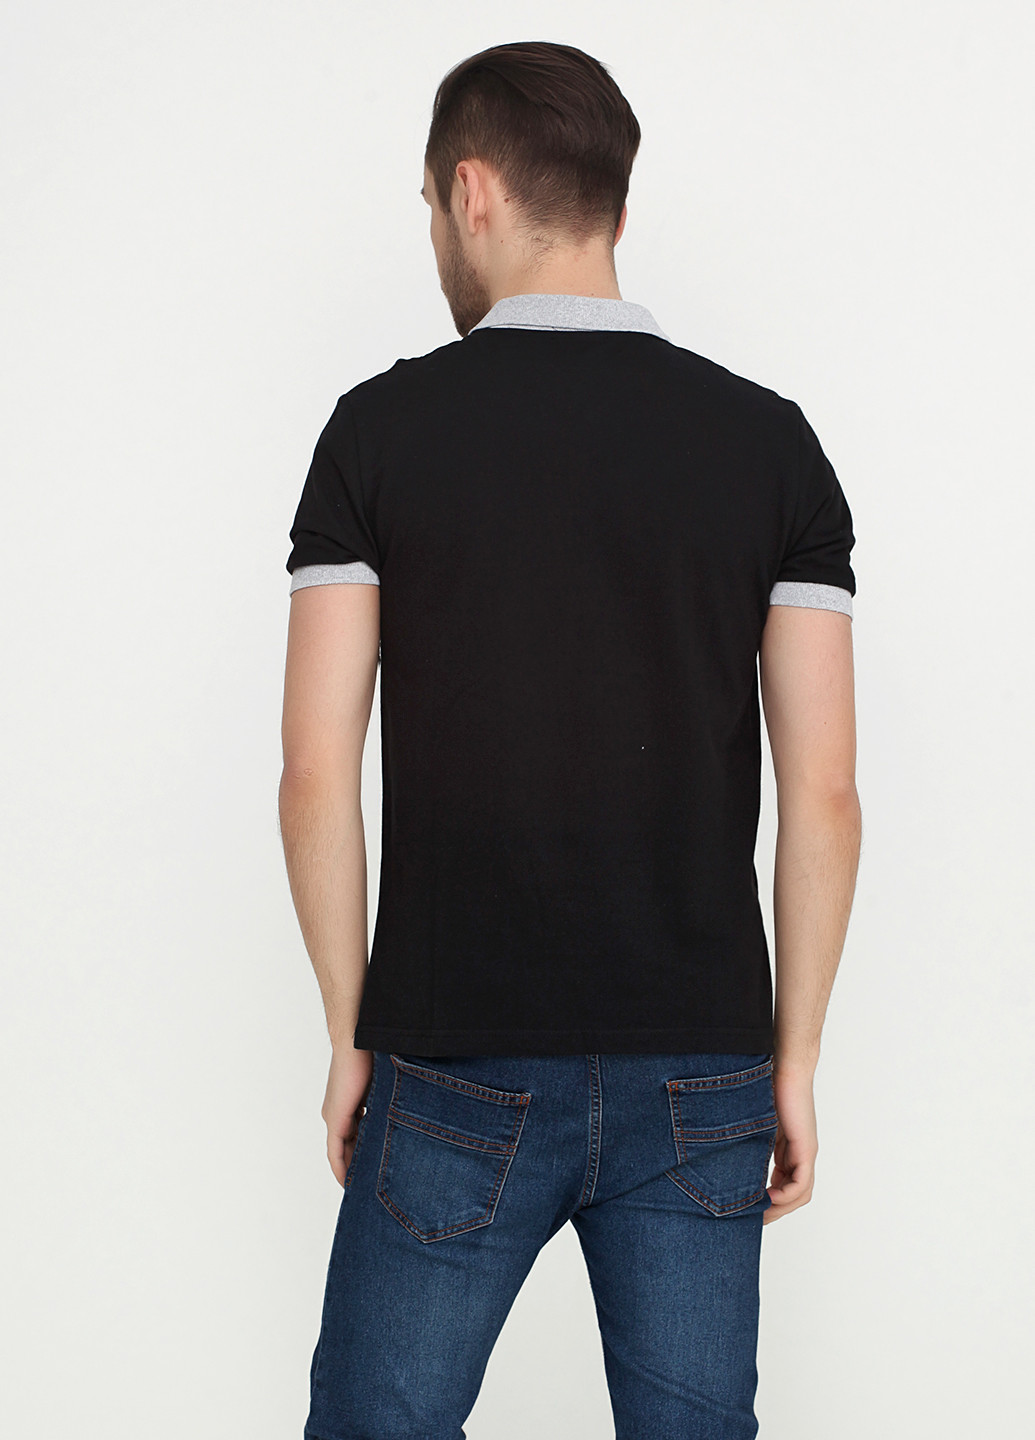 Черная футболка-поло для мужчин Chiarotex с логотипом